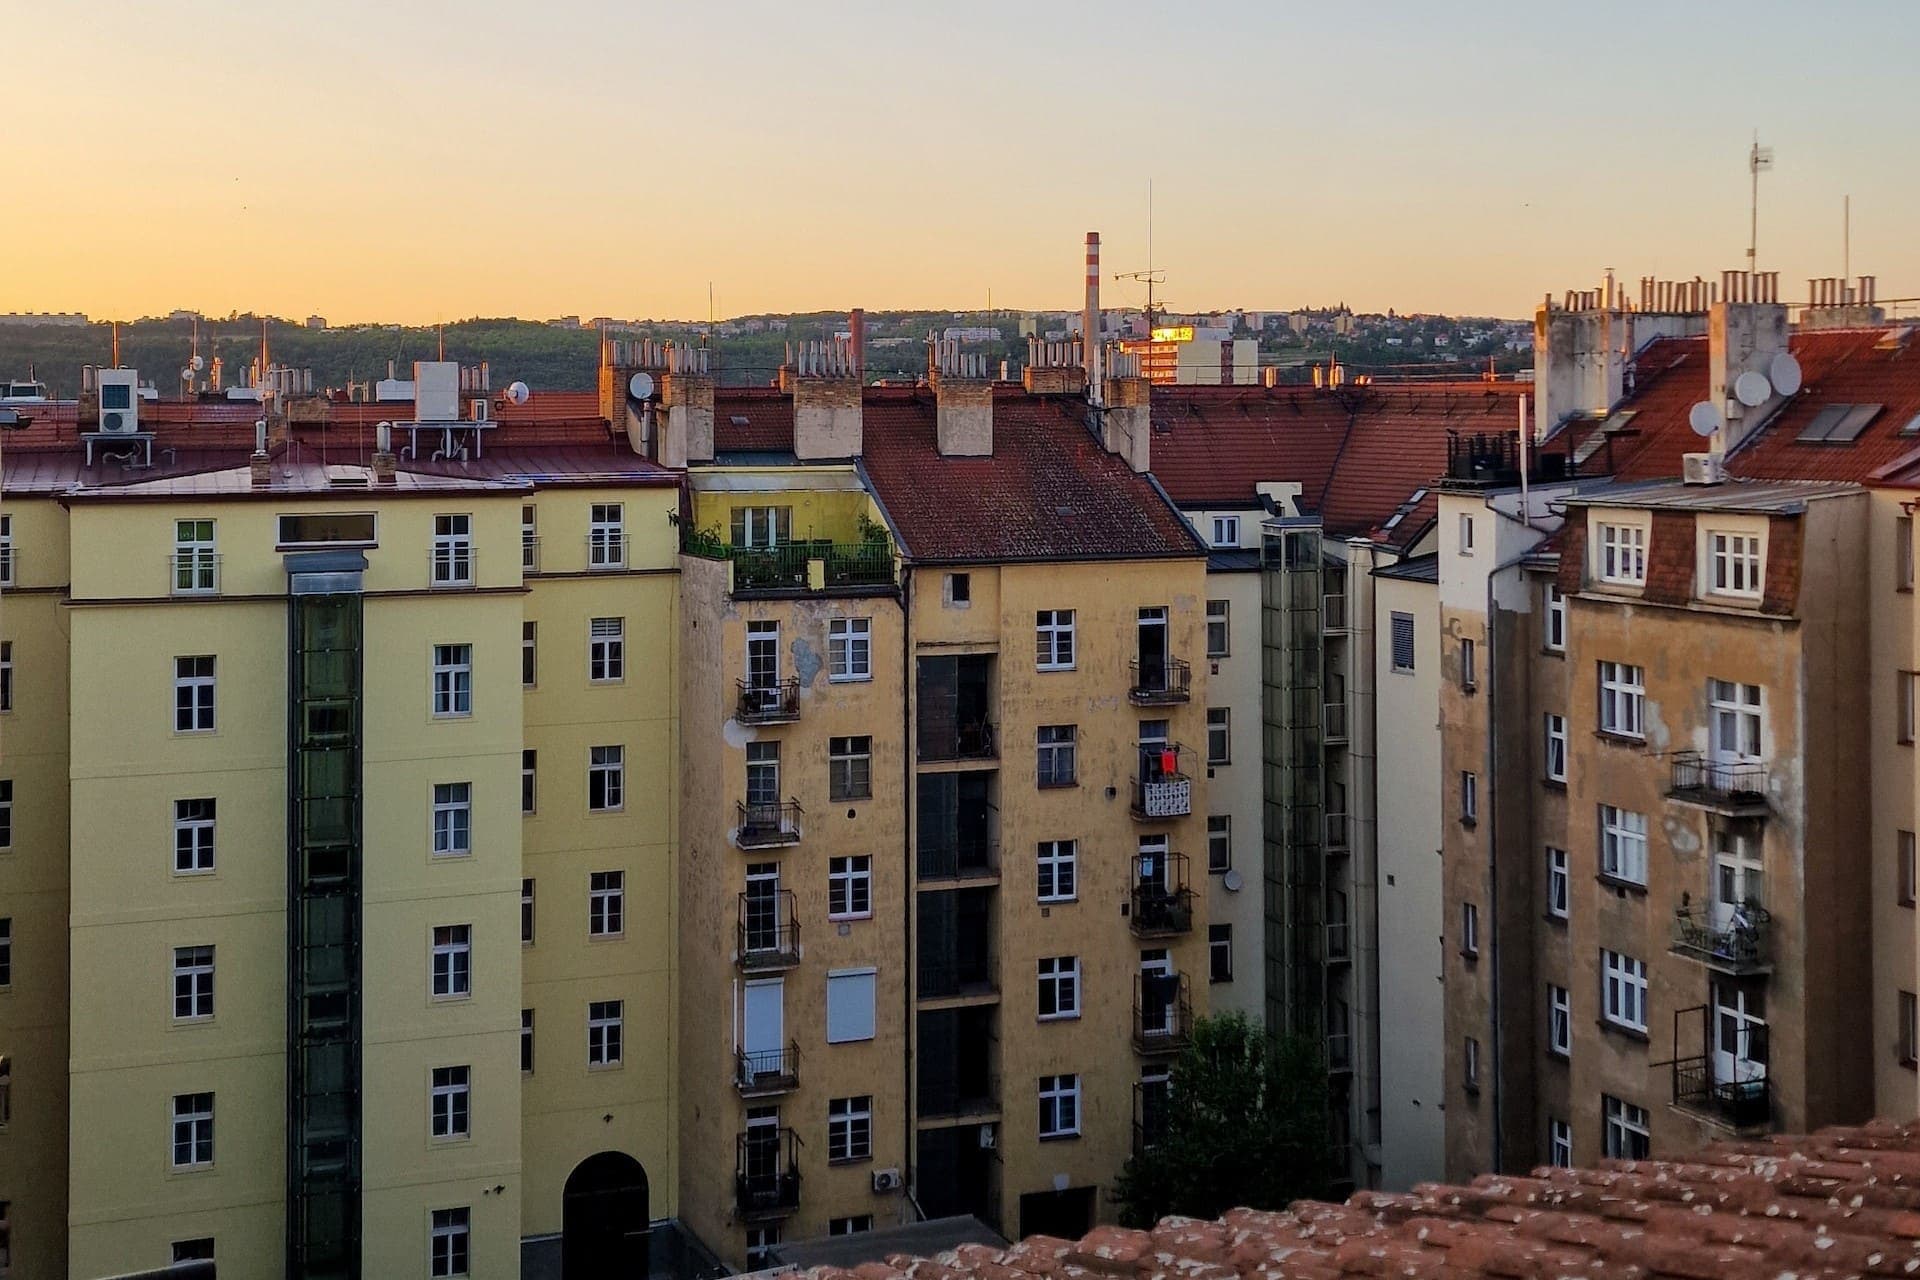 Анализ: во втором квартале арендная плата в крупных городах Чехии выросла на несколько процентов